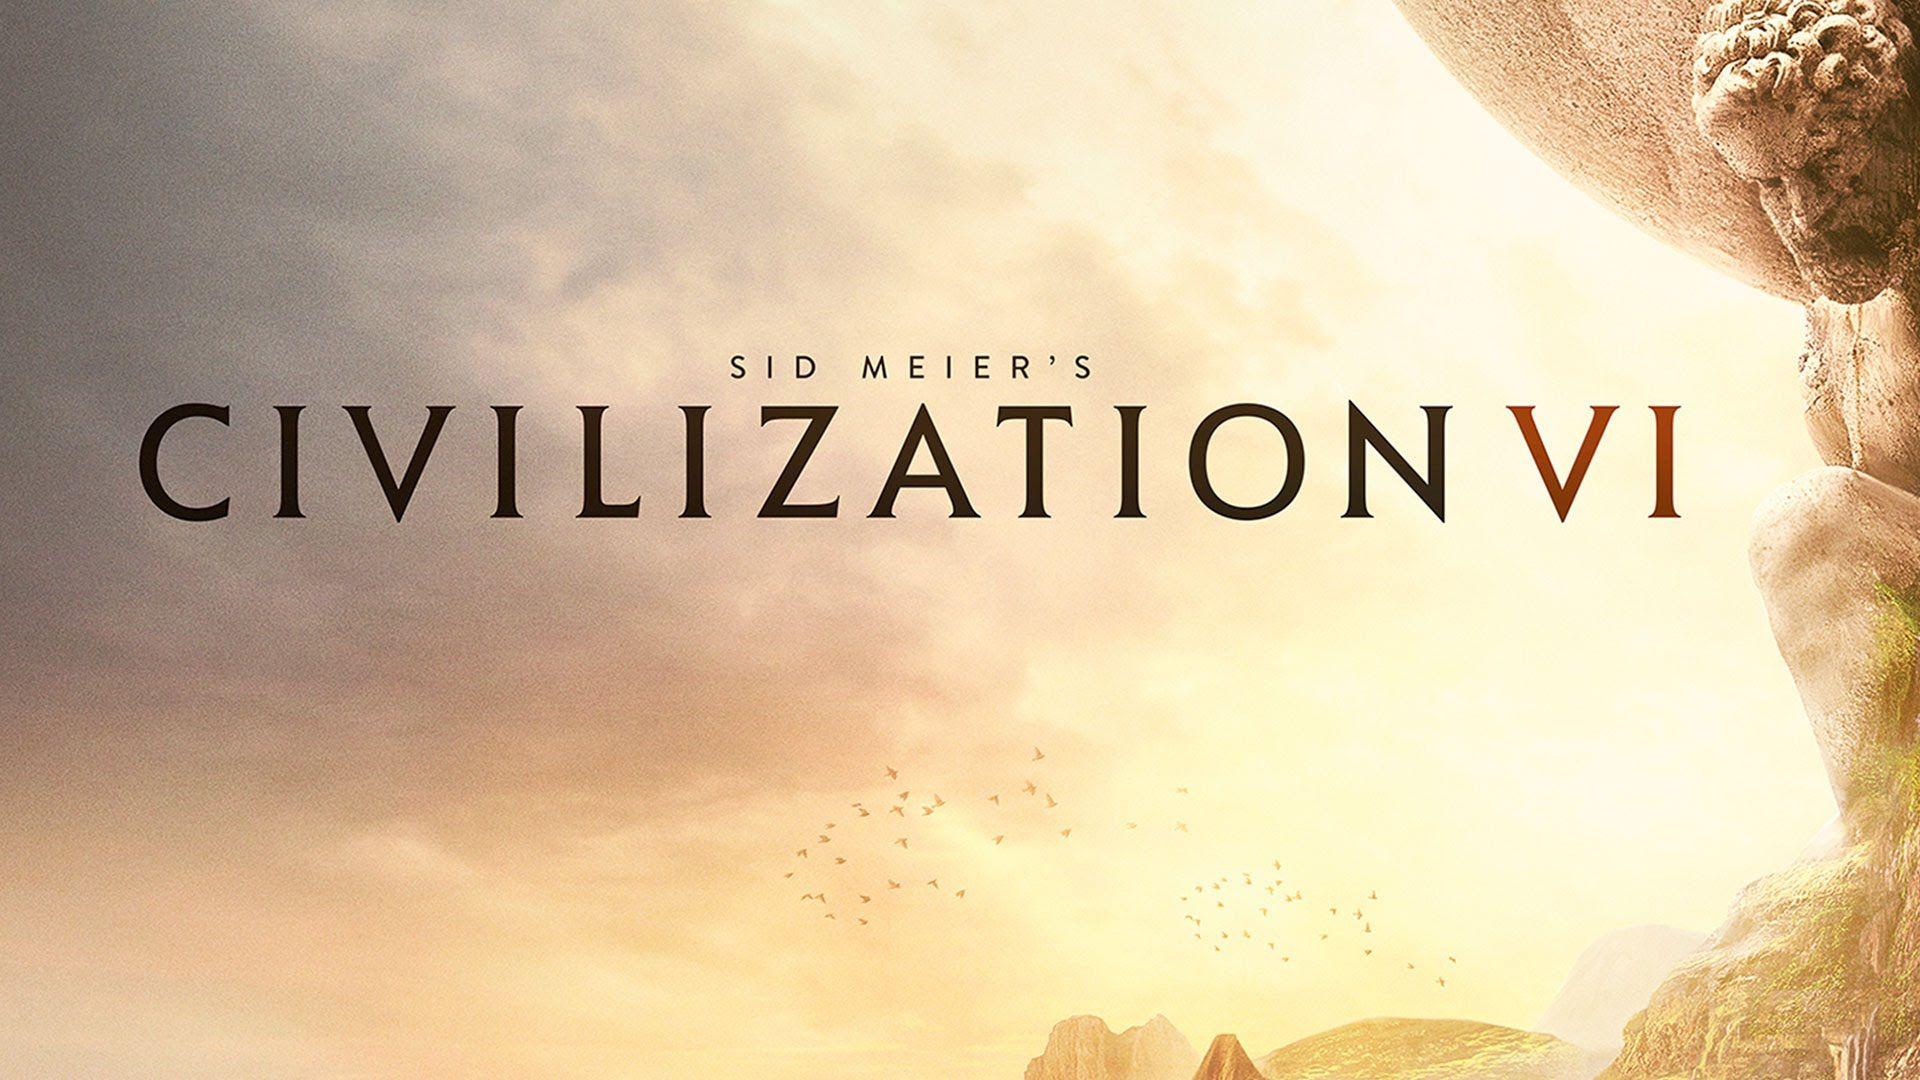 Civilization VI HD Wallpaper 6 X 1080